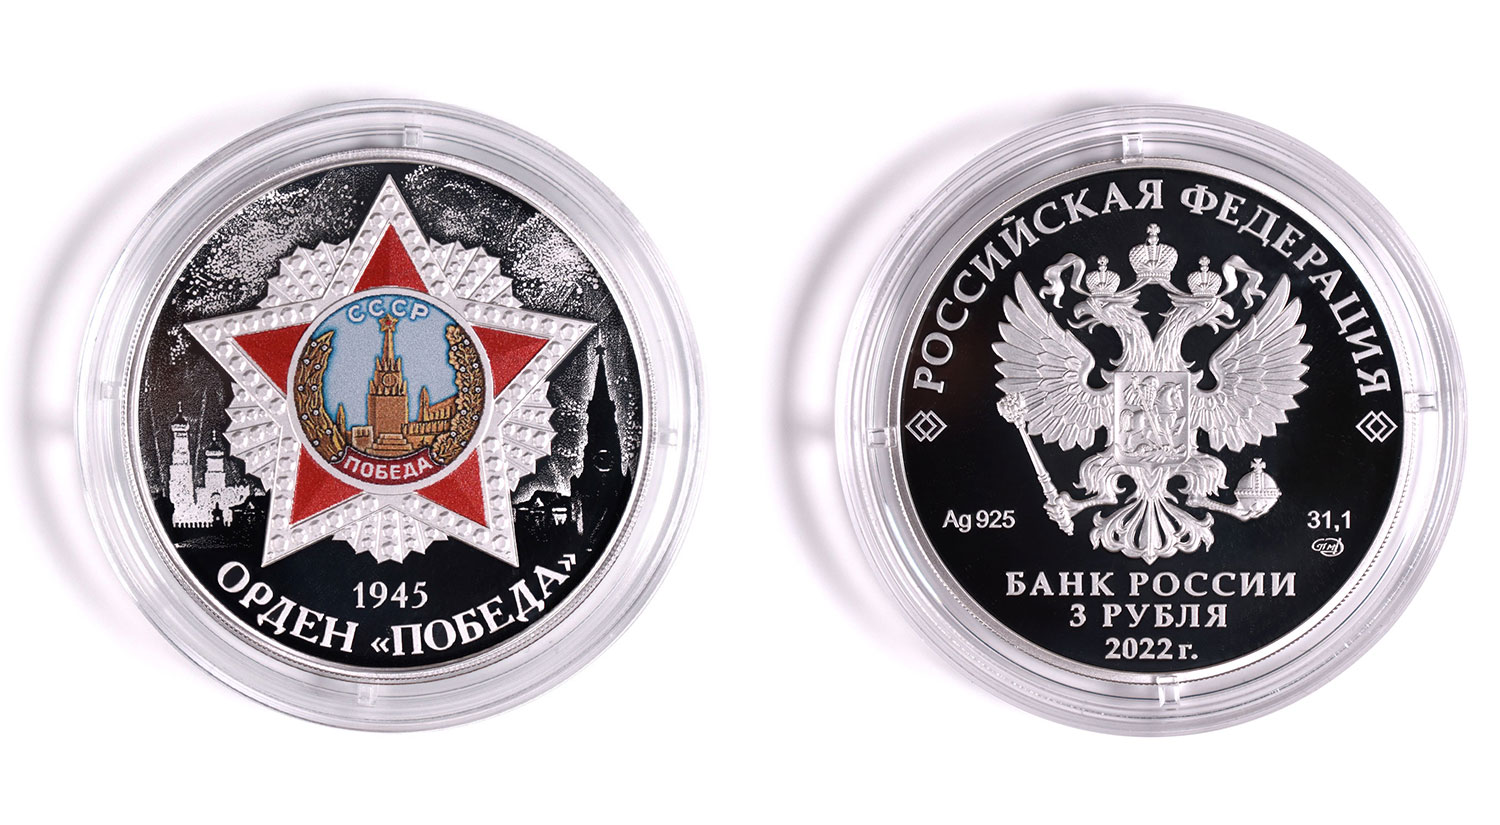 3 рубля 2022 - Орден "Победа"